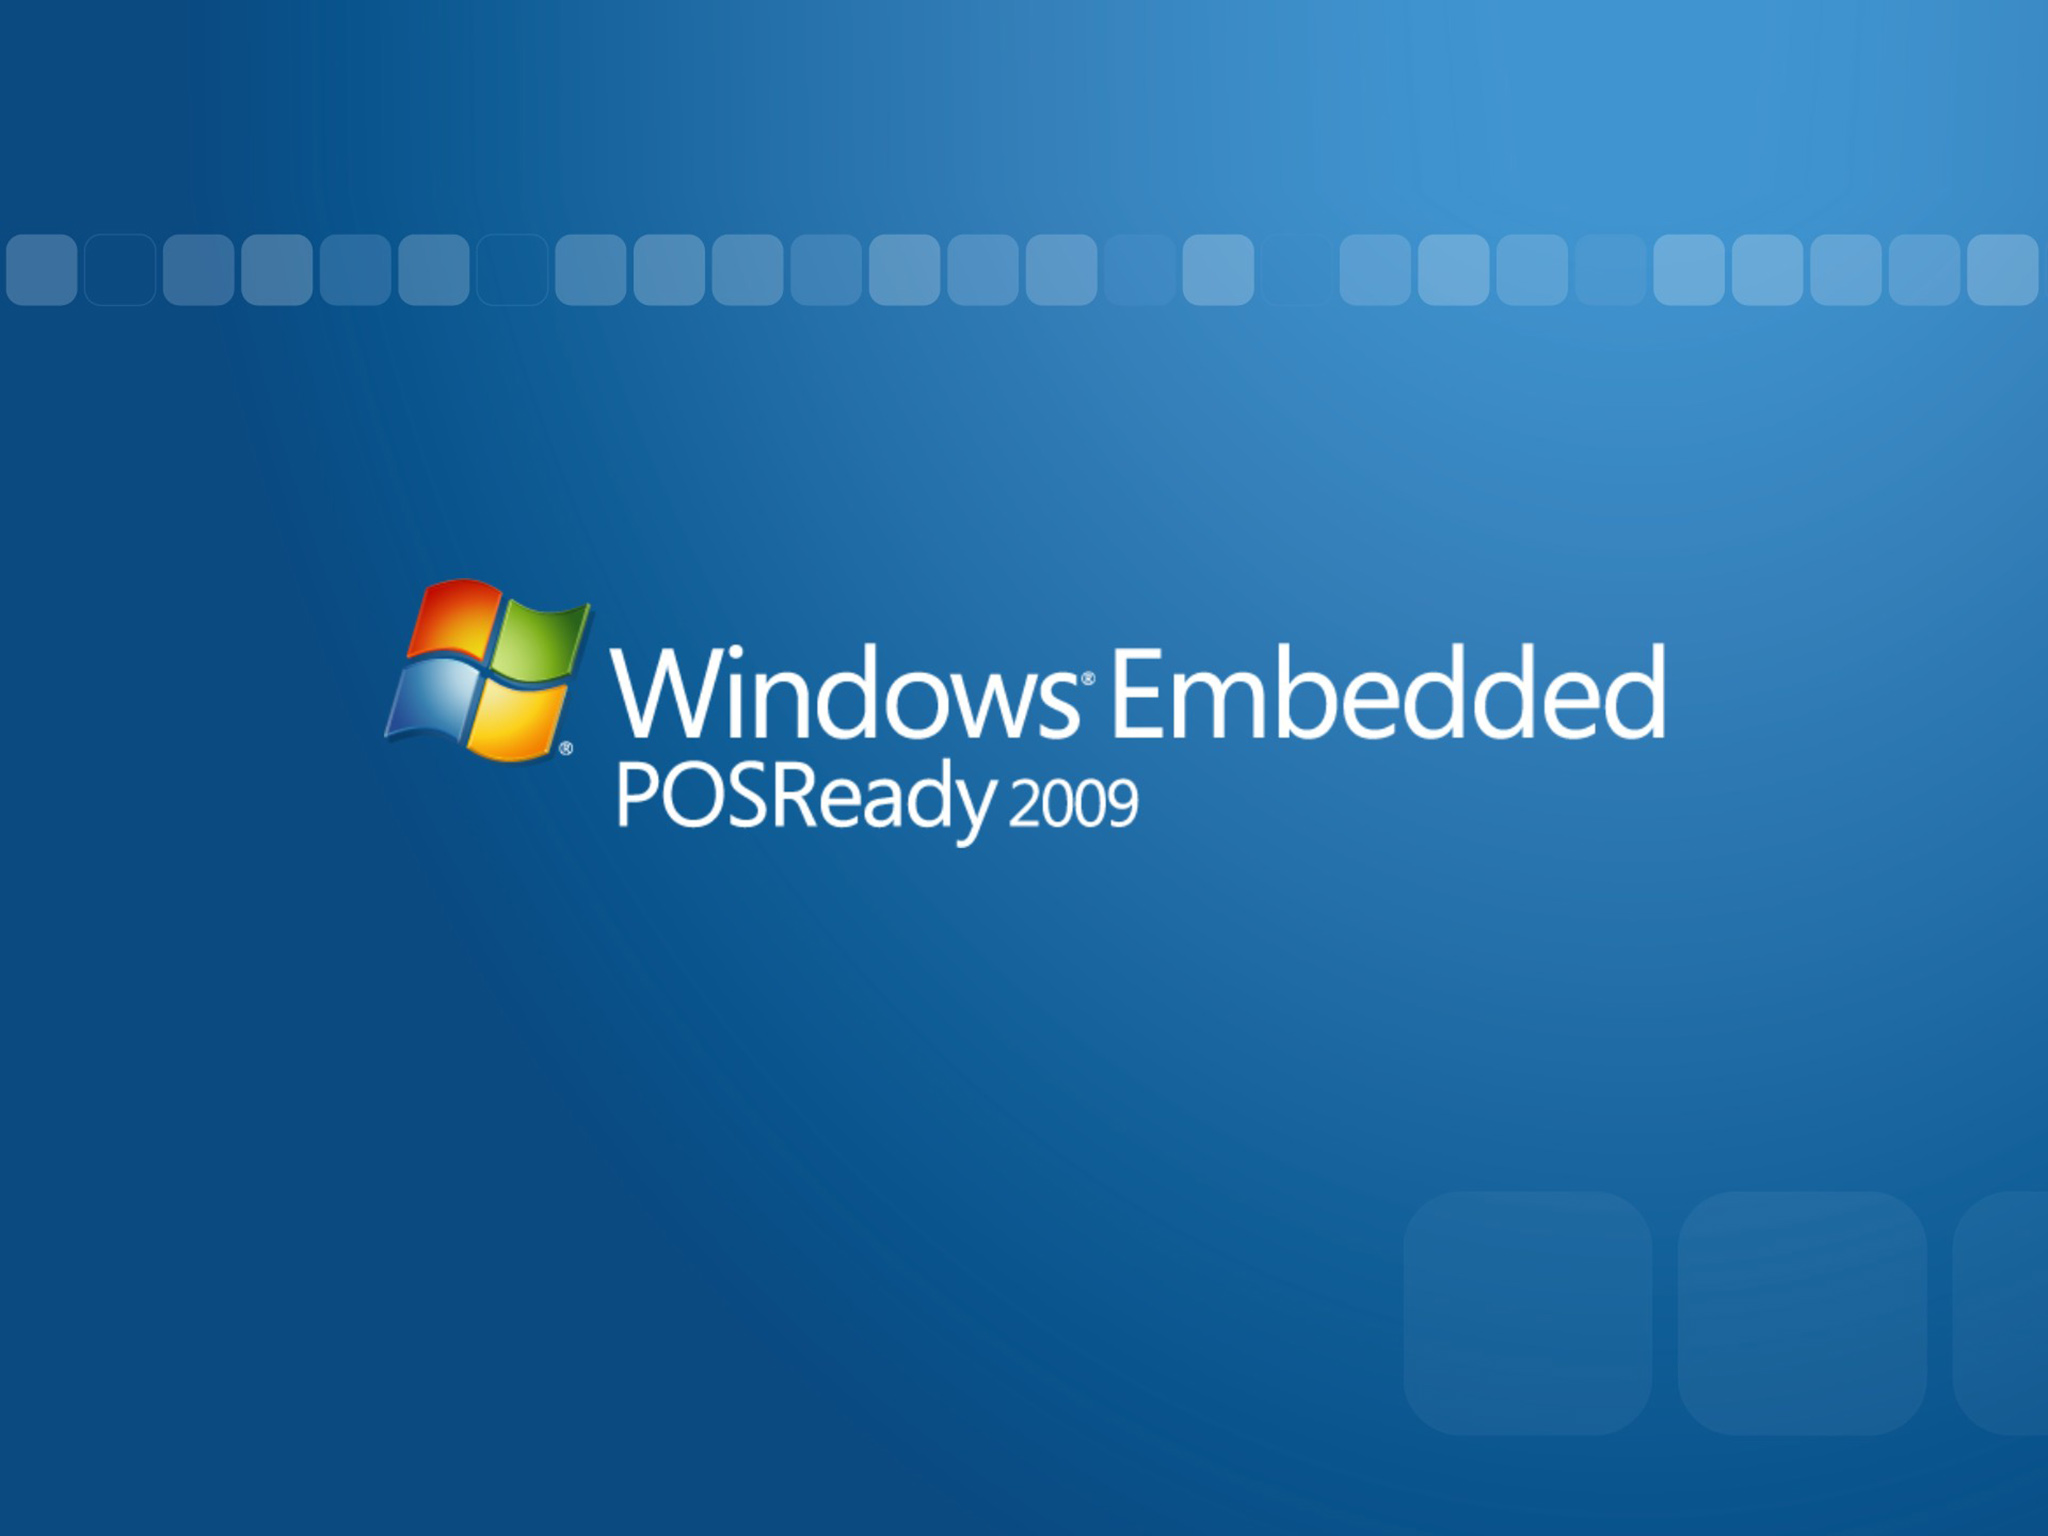 Windows Embedded POS Ready 2009.jpg